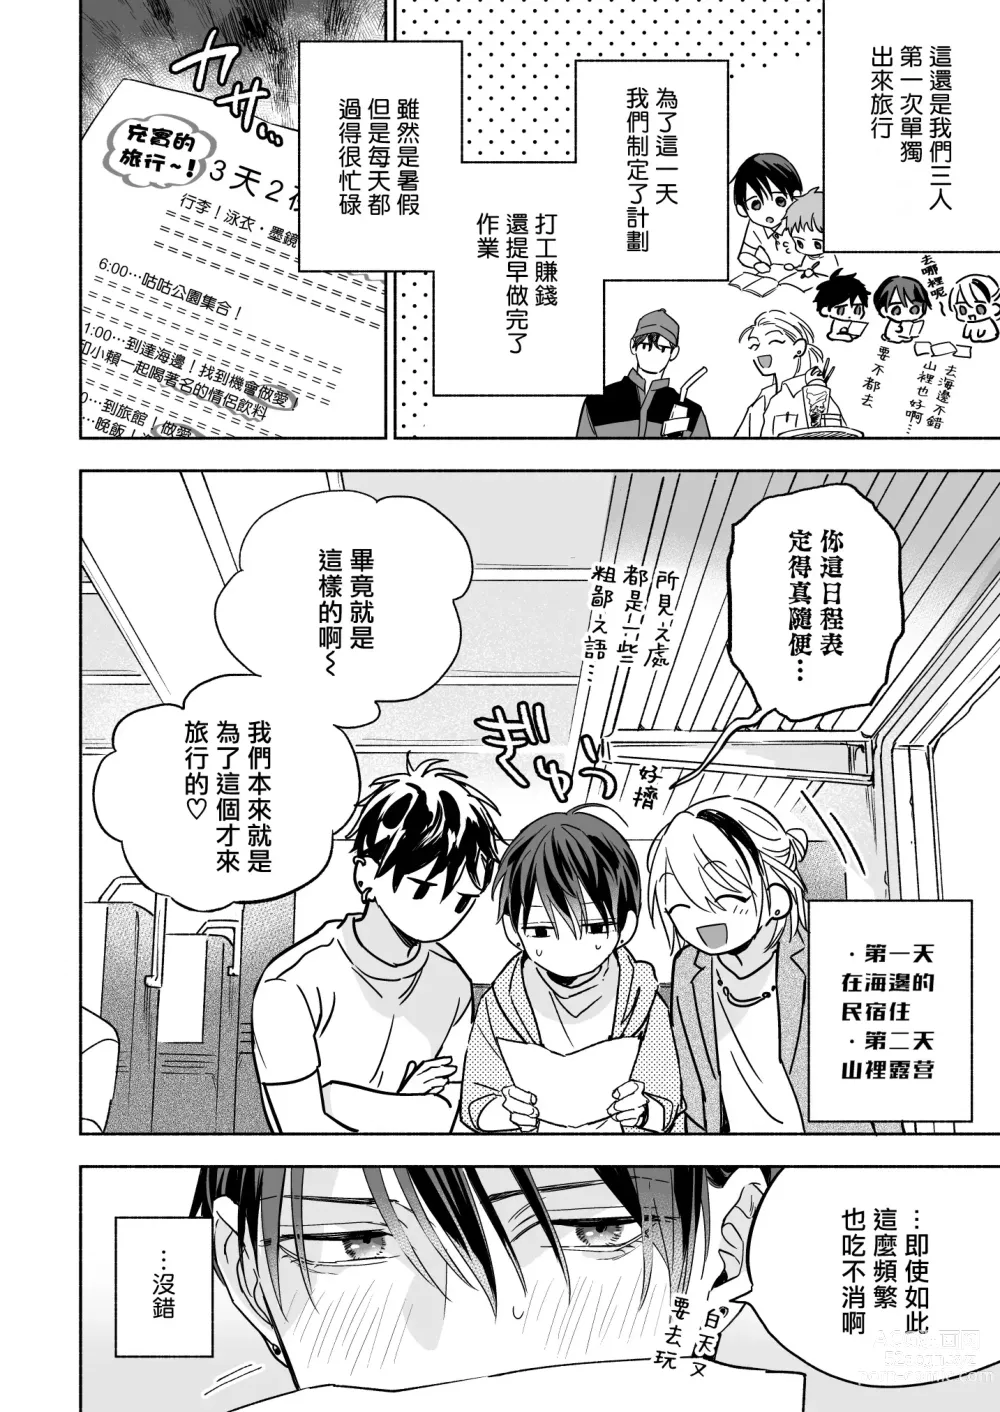 Page 6 of doujinshi 你选上面还是下面? 03